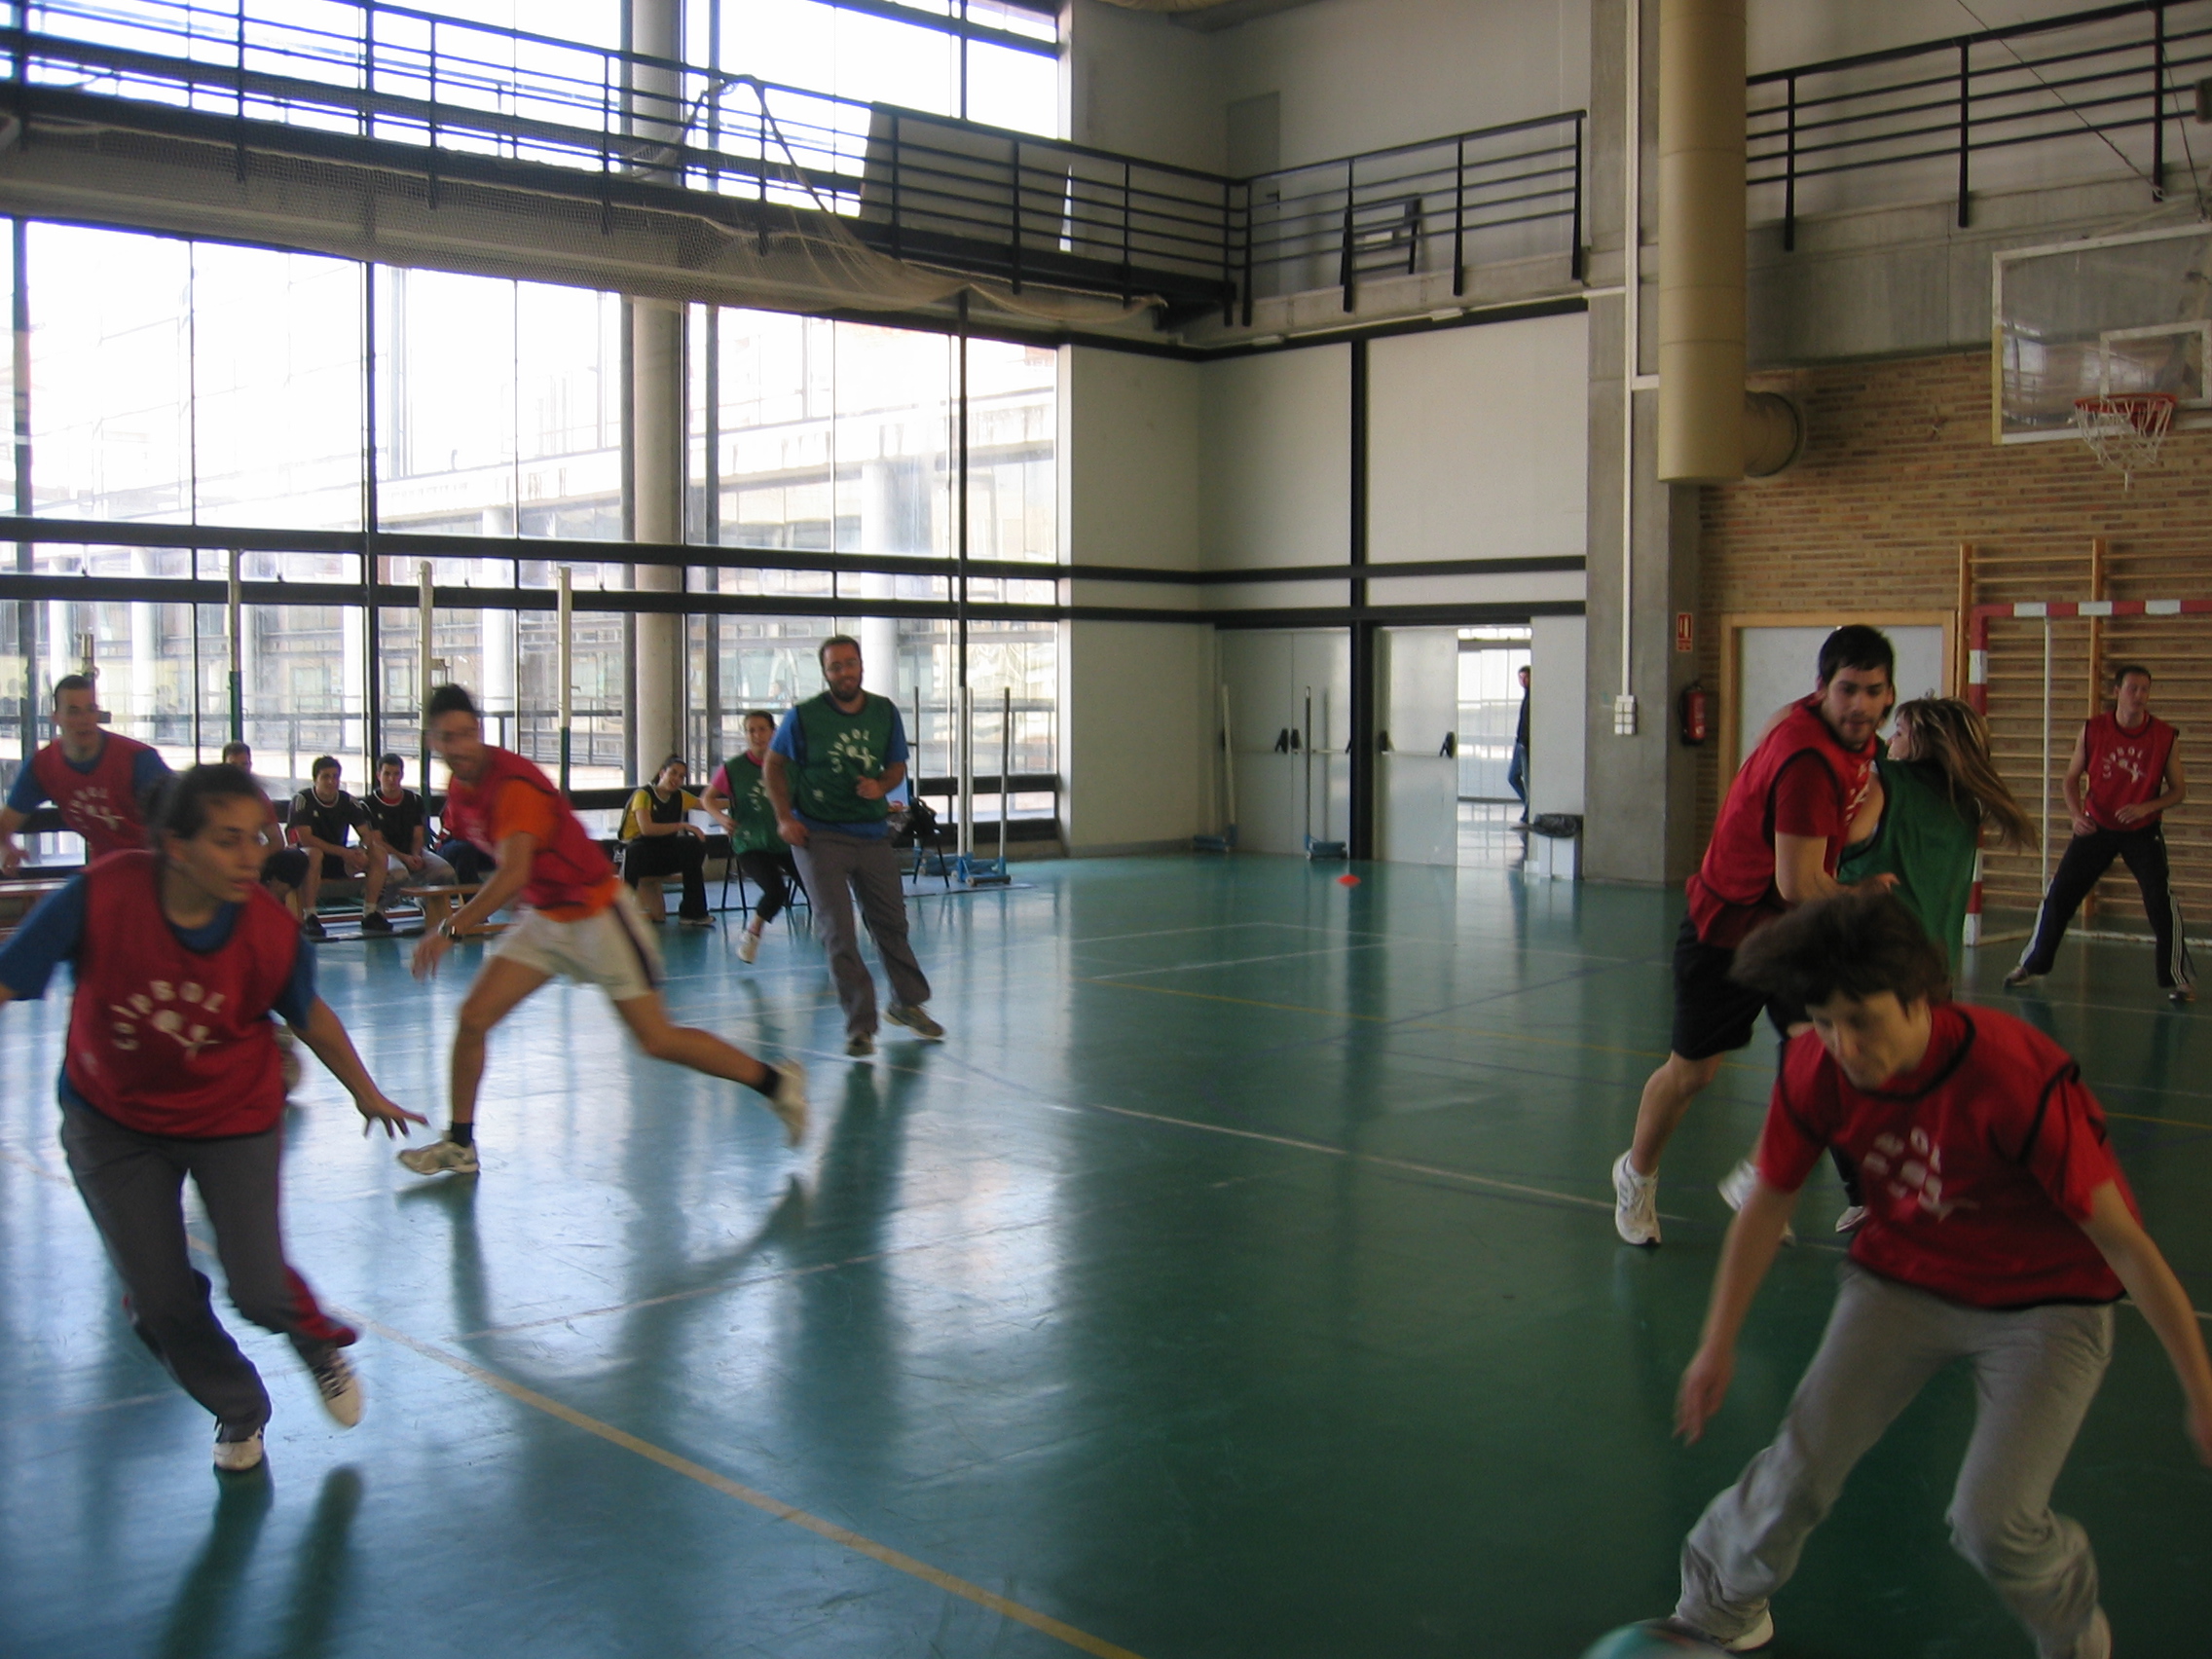 La Universidad de Valencia acogió la conferencia: “Innovación y deporte: el Colpbol”